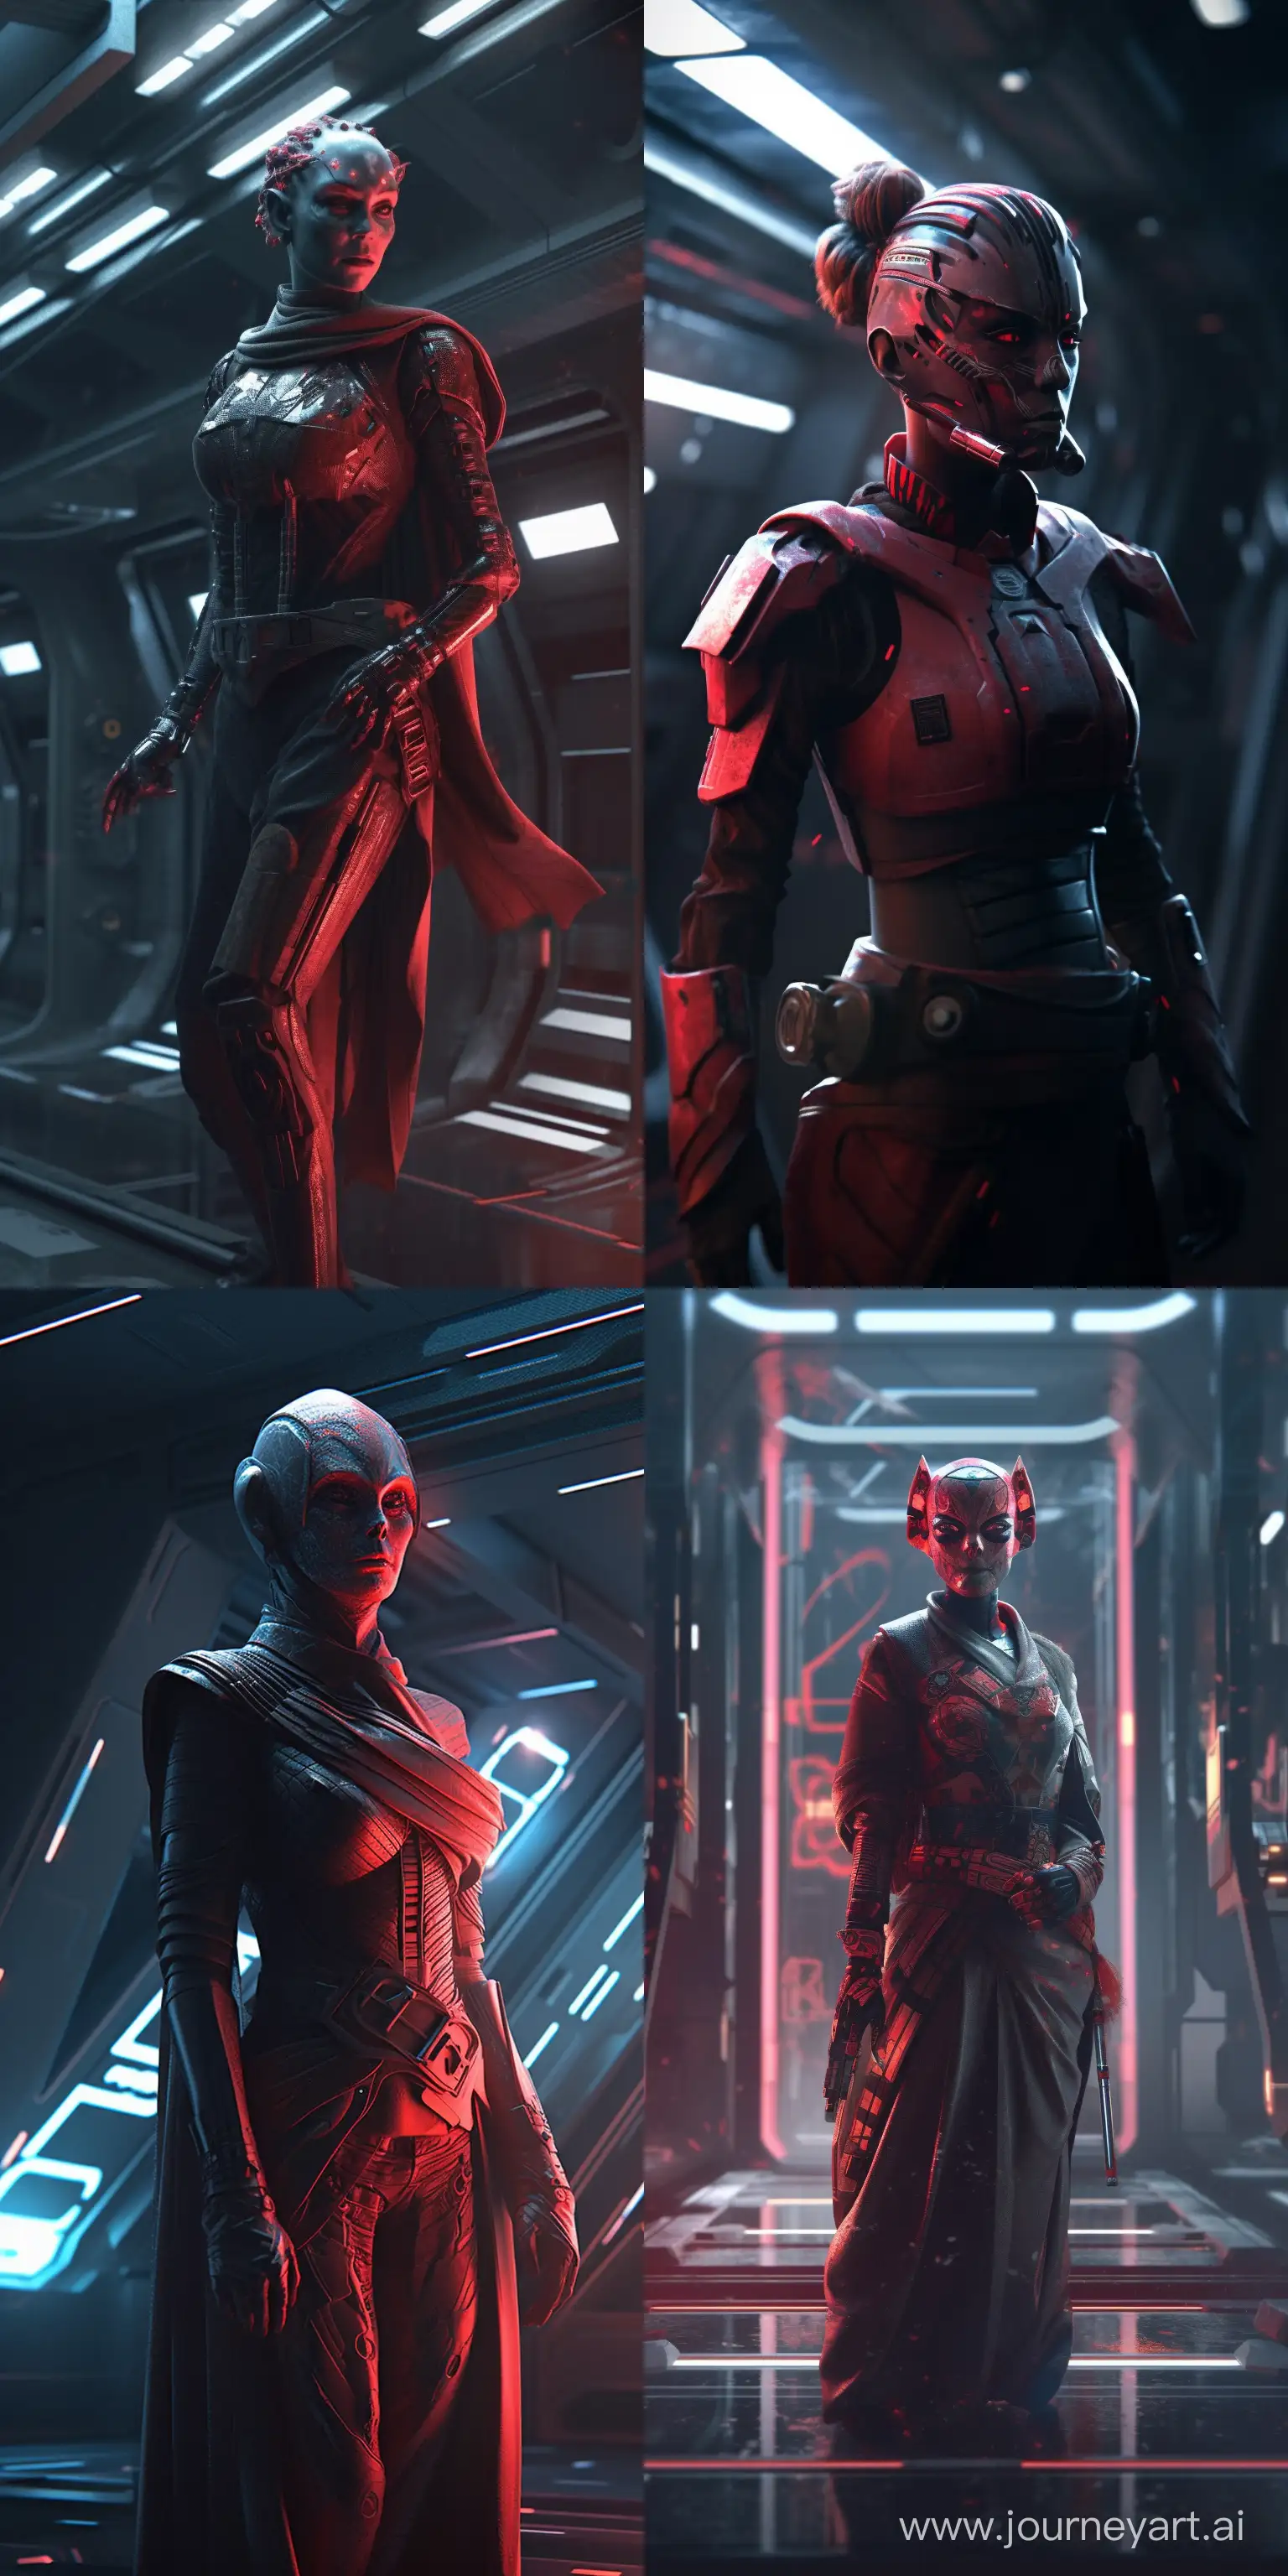 Sith-Zabrak-Woman-Darth-Maul-HyperRealistic-3D-Portrait-in-Epic-Galaxy-Setting